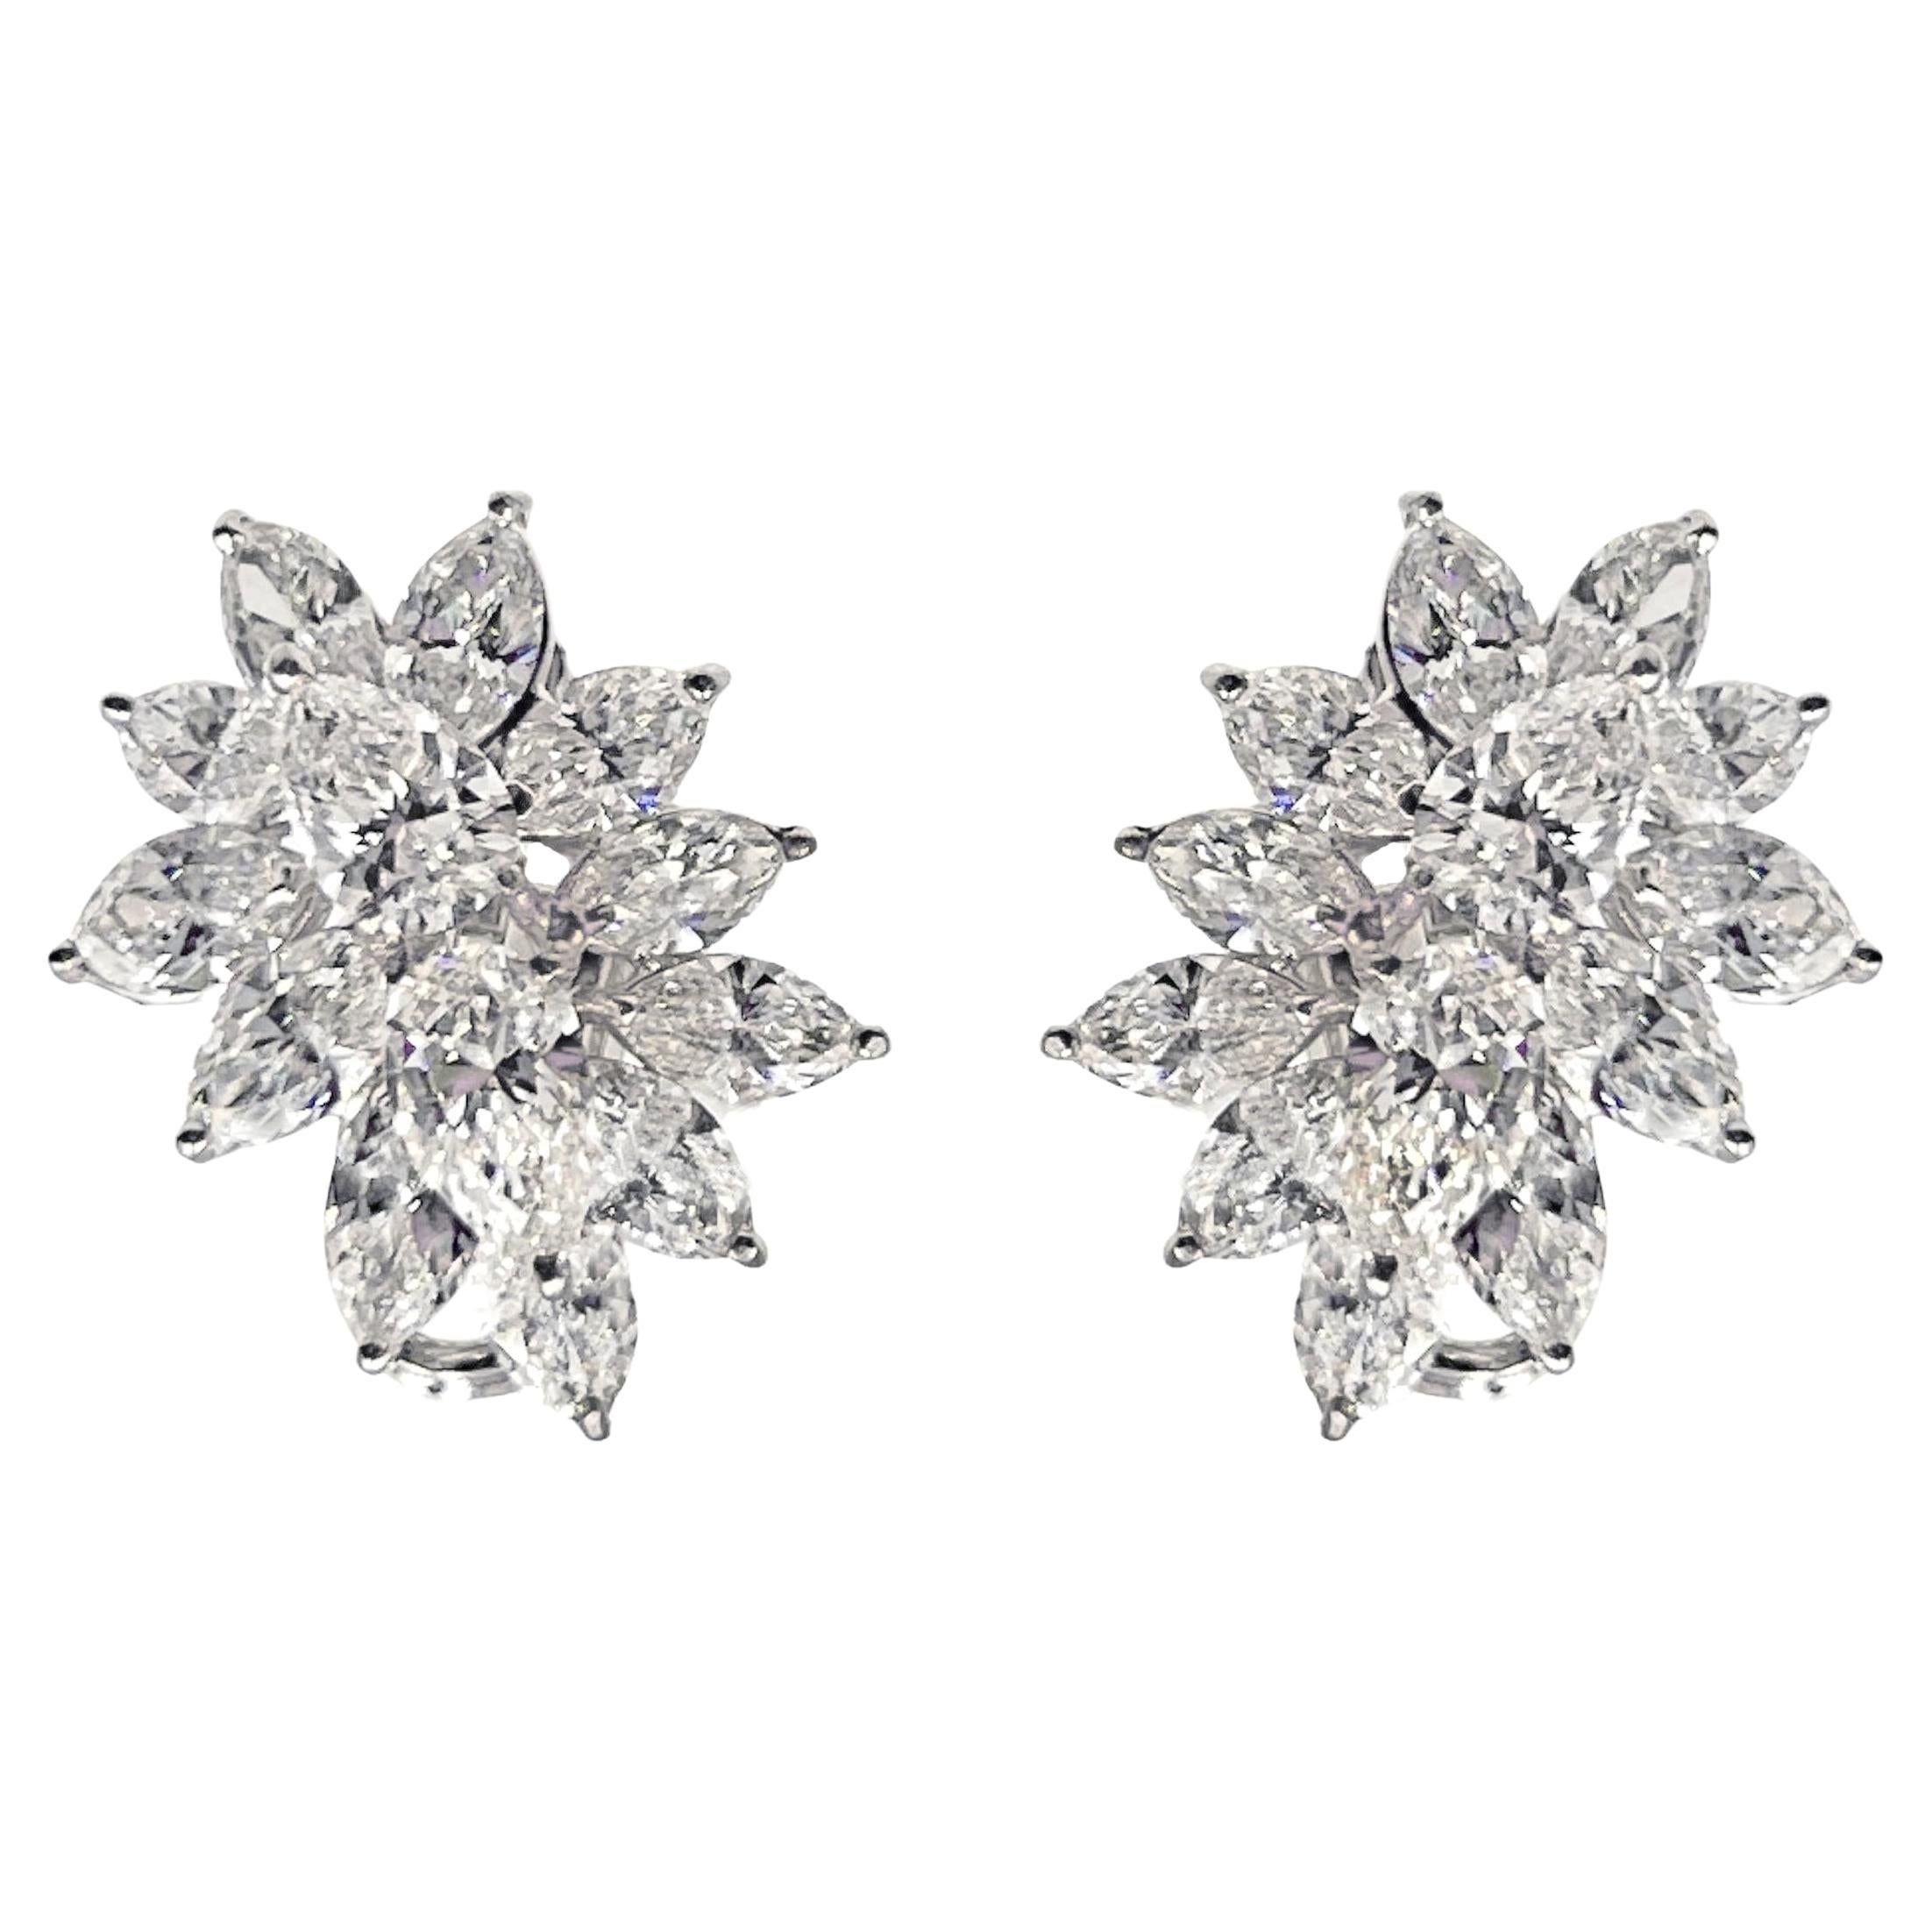 Harry Winston Platinum Diamond Cluster Earrings For Sale